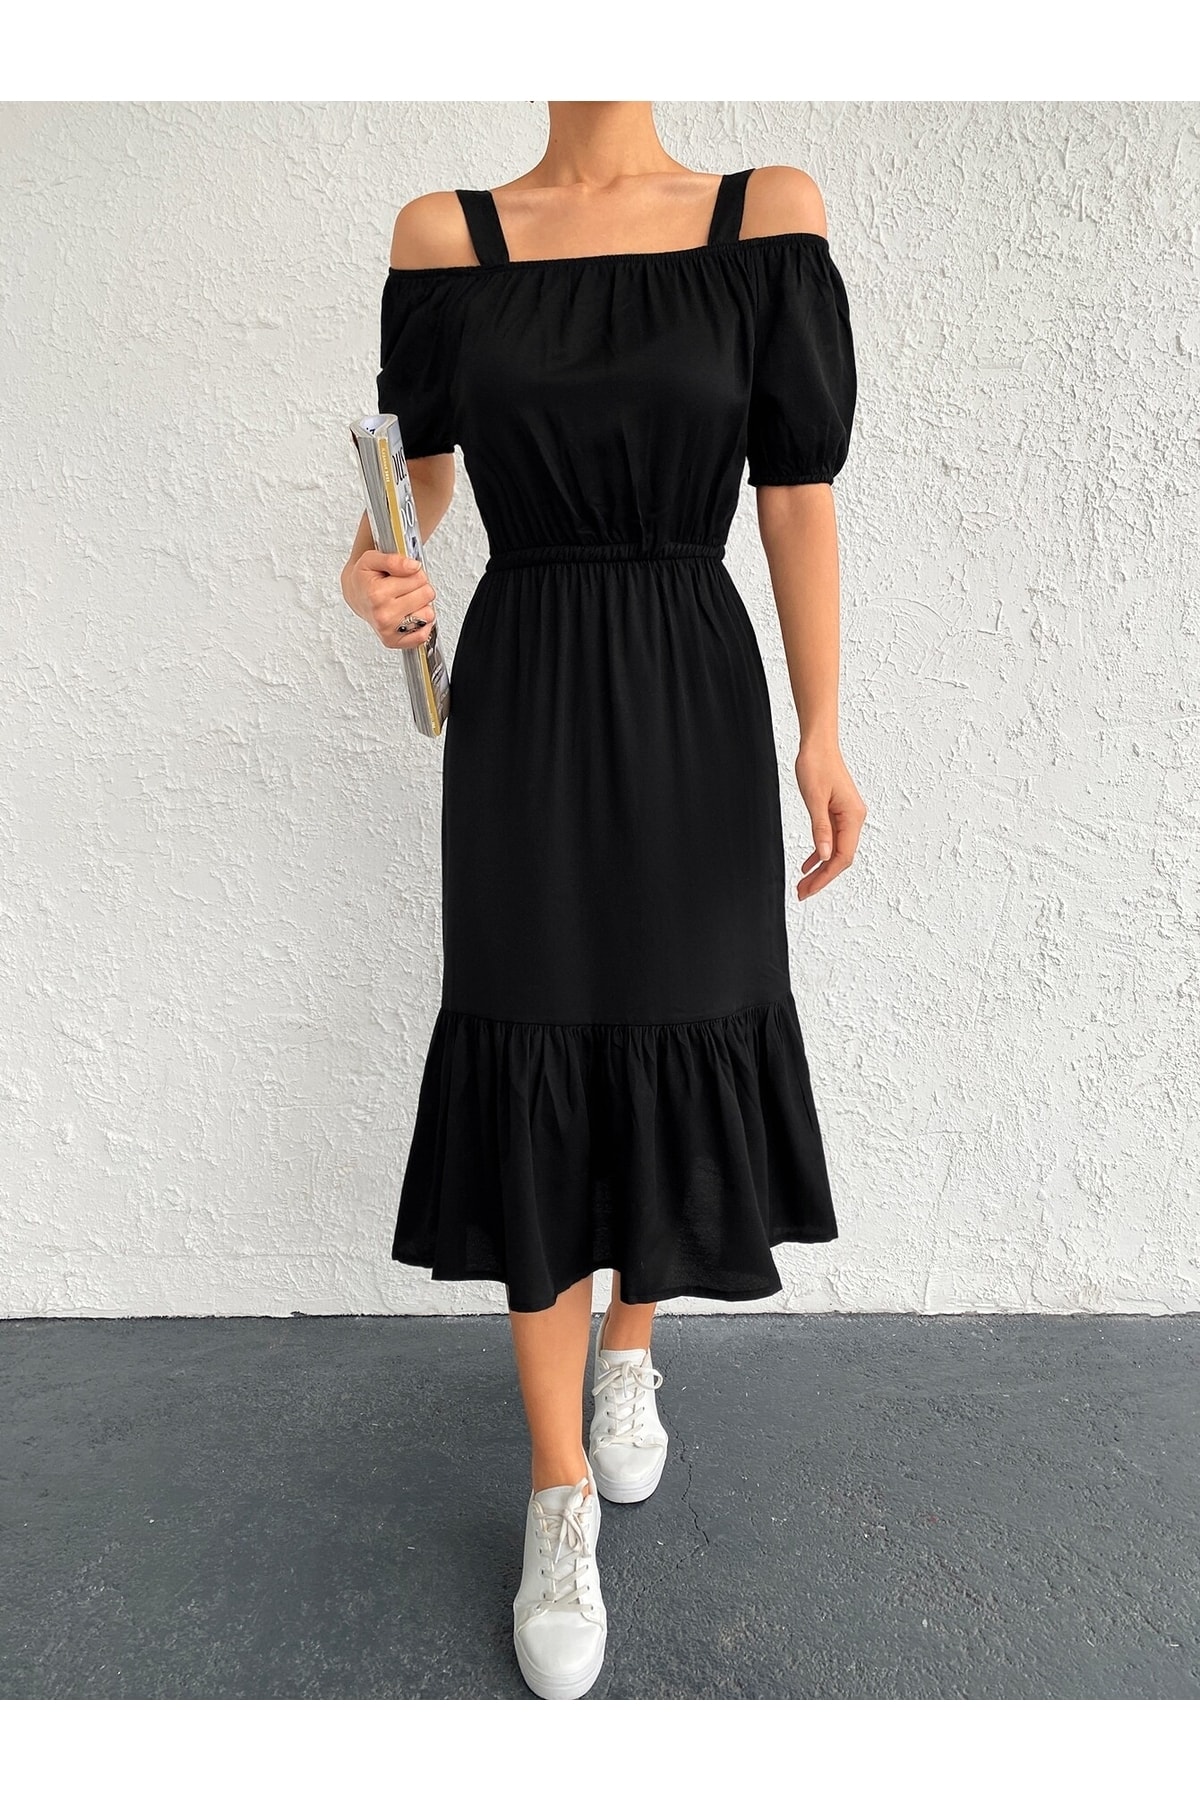 armonika Kadın Siyah Beli Lastikli Askılı Elbise ARM-21K001214